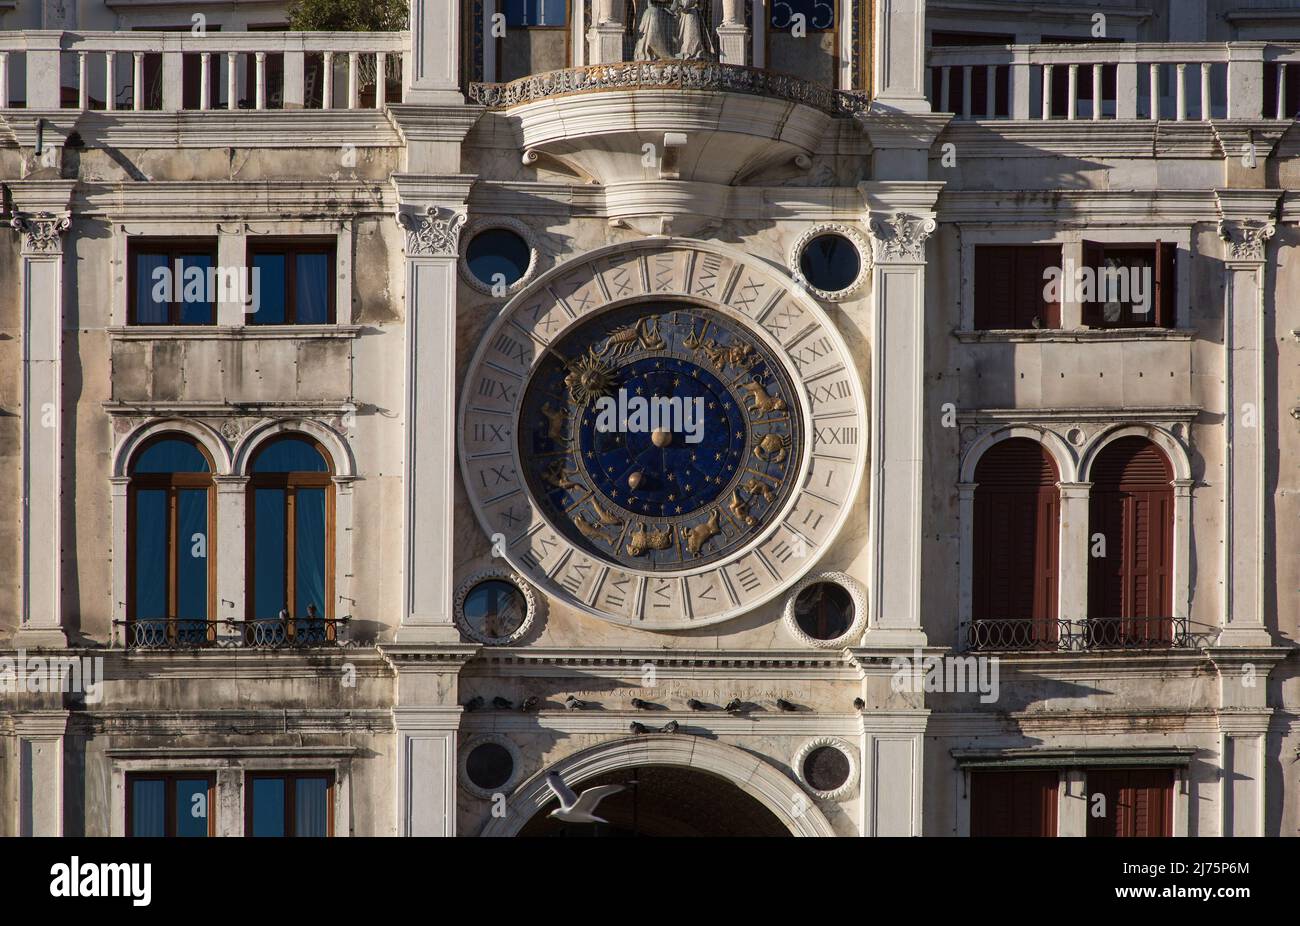 Italien Venedig Uhrenturm am Markusplatz -503 vollendet 1499 von Mauro Codussi Fassadenausschnitt Zeigeruhr mit 24-Stunden-Zifferblatt u Tierkreiszeic Foto Stock